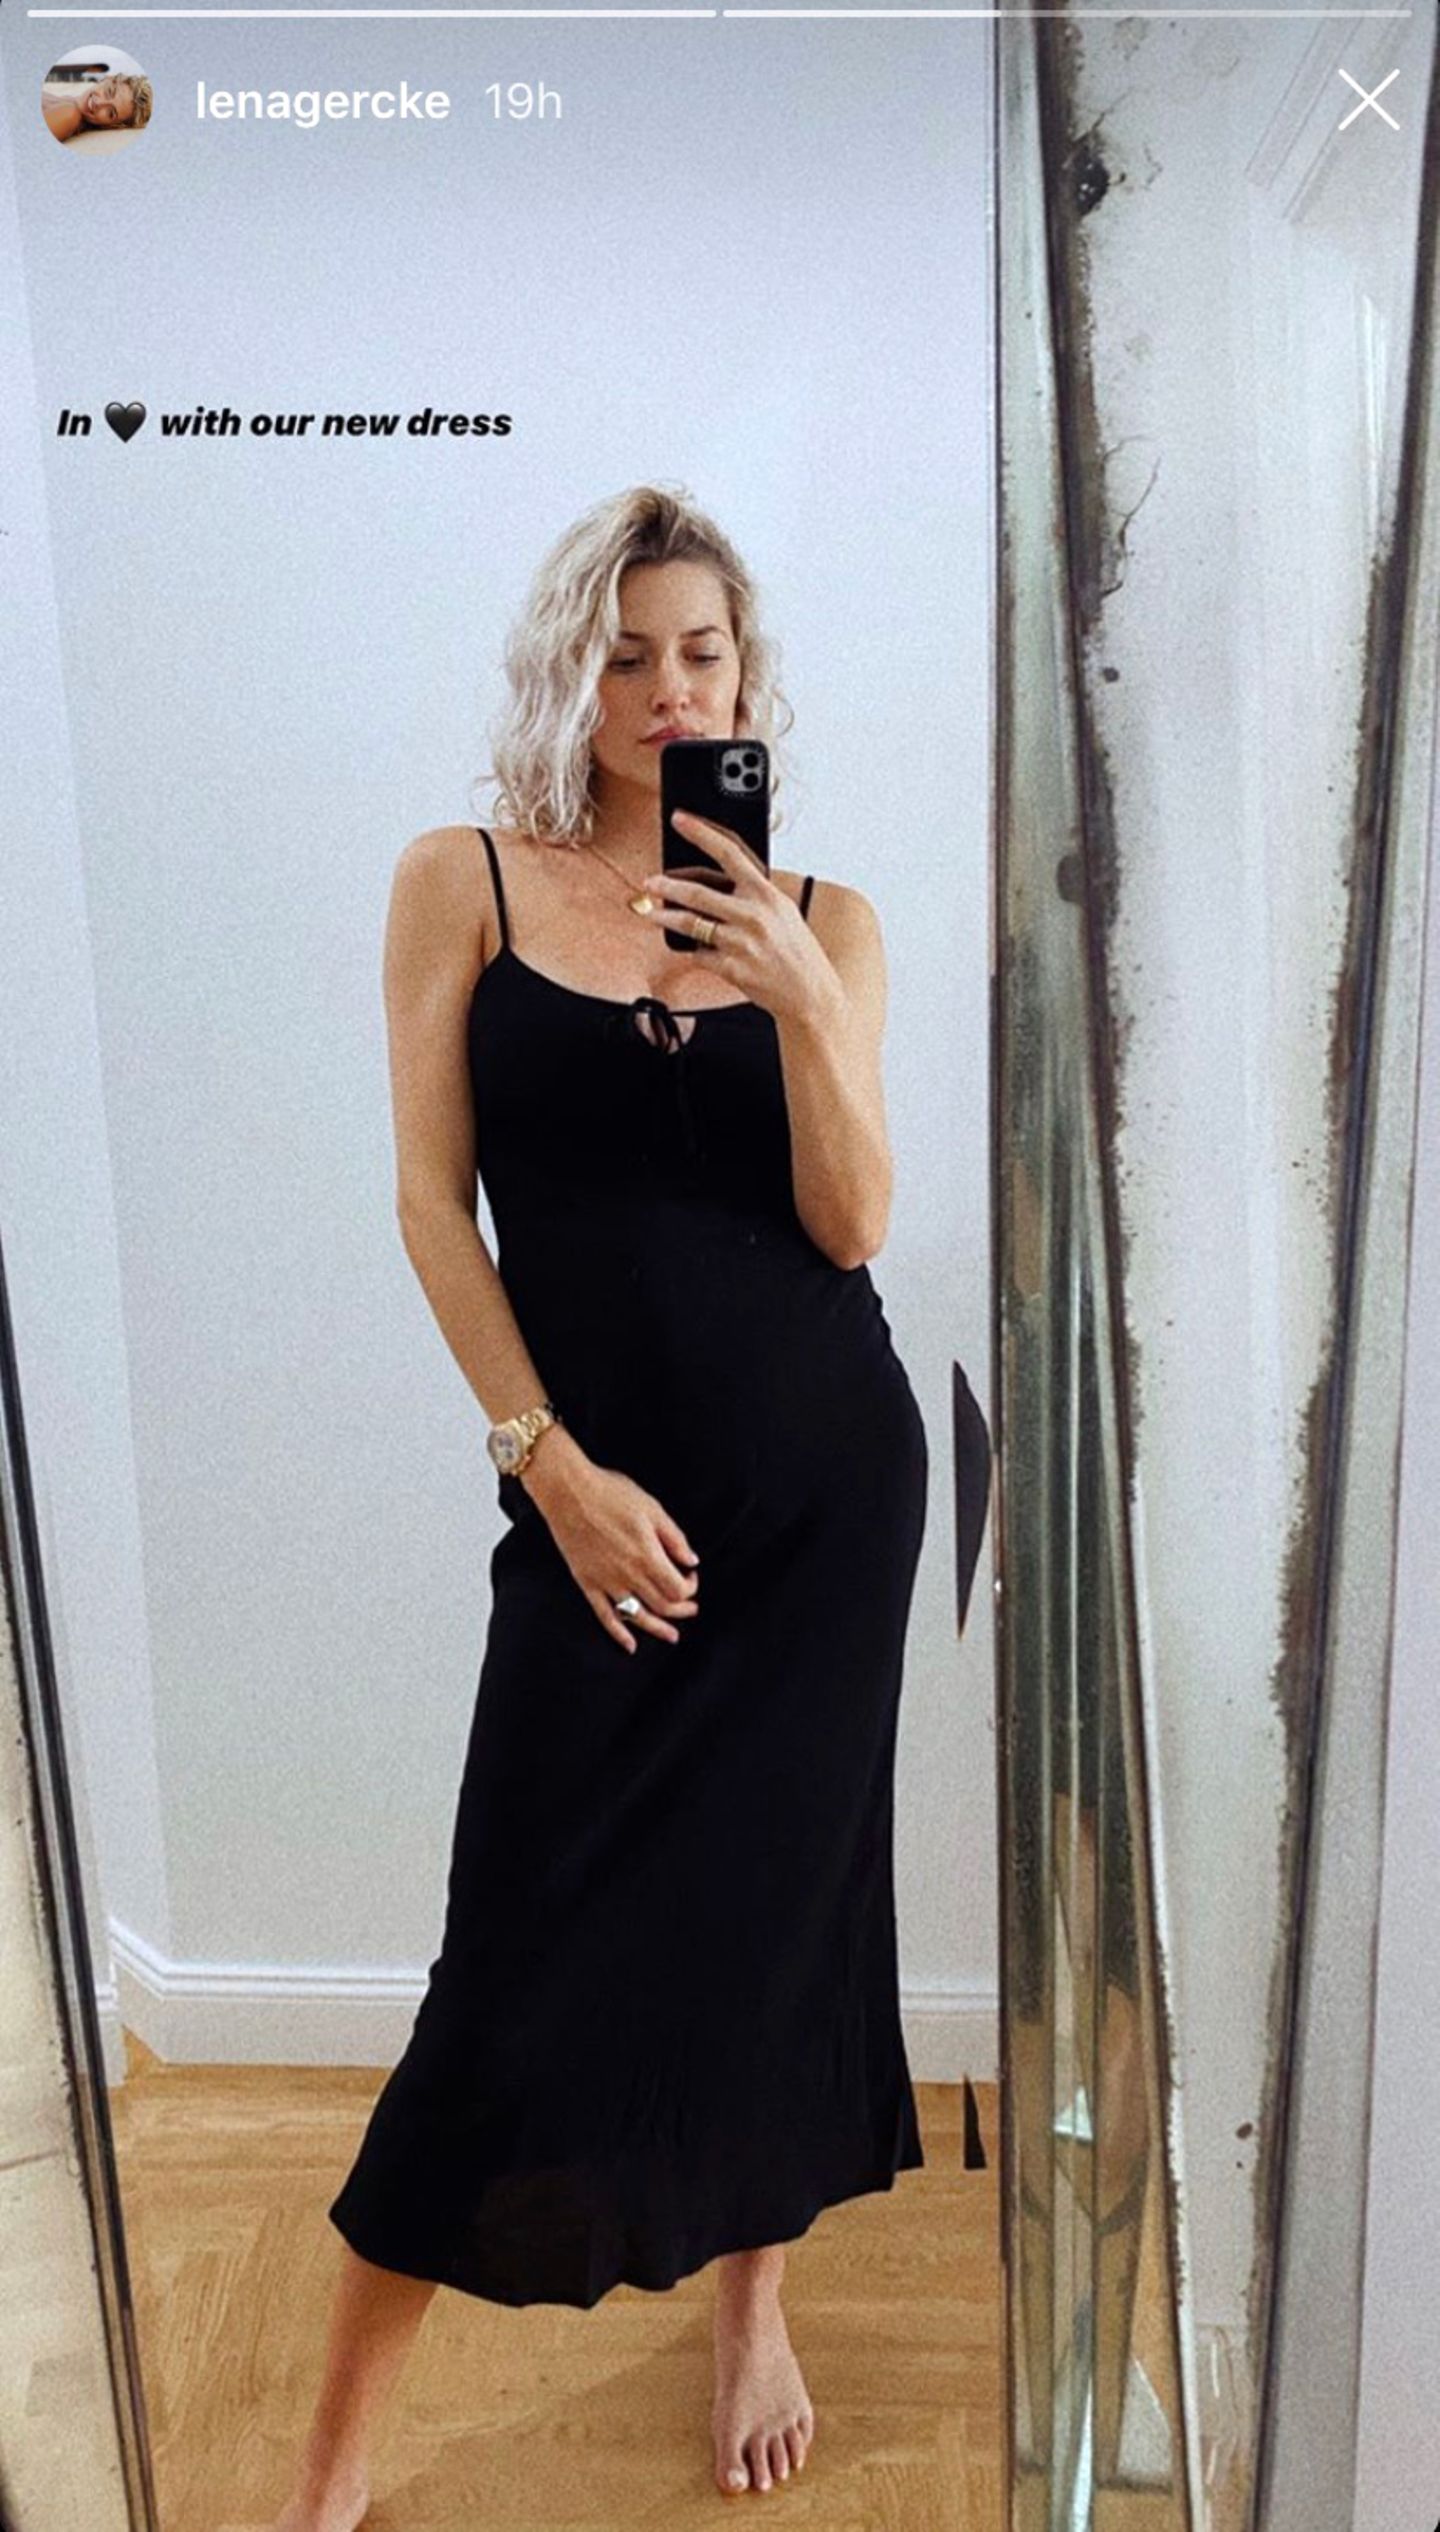 "Ich liebe das neue Kleid!", kommentiert Lena Gercke ihr Selfie bei Instagram. Das schwarze Maxi-Dress aus fließendem Stoff stammt aus ihrer LeGer-Kollektion, wird am Dekolleté geknotet und ist tailliert geschnitten. Die besten Voraussetzungen, um den After-Baby-Body samt Mama-Kurven perfekt in Szene zu setzen. Zum Zeitpunkt dieser Aufnahme ist die Geburt von Tochter Zoe rund zwei Wochen her.